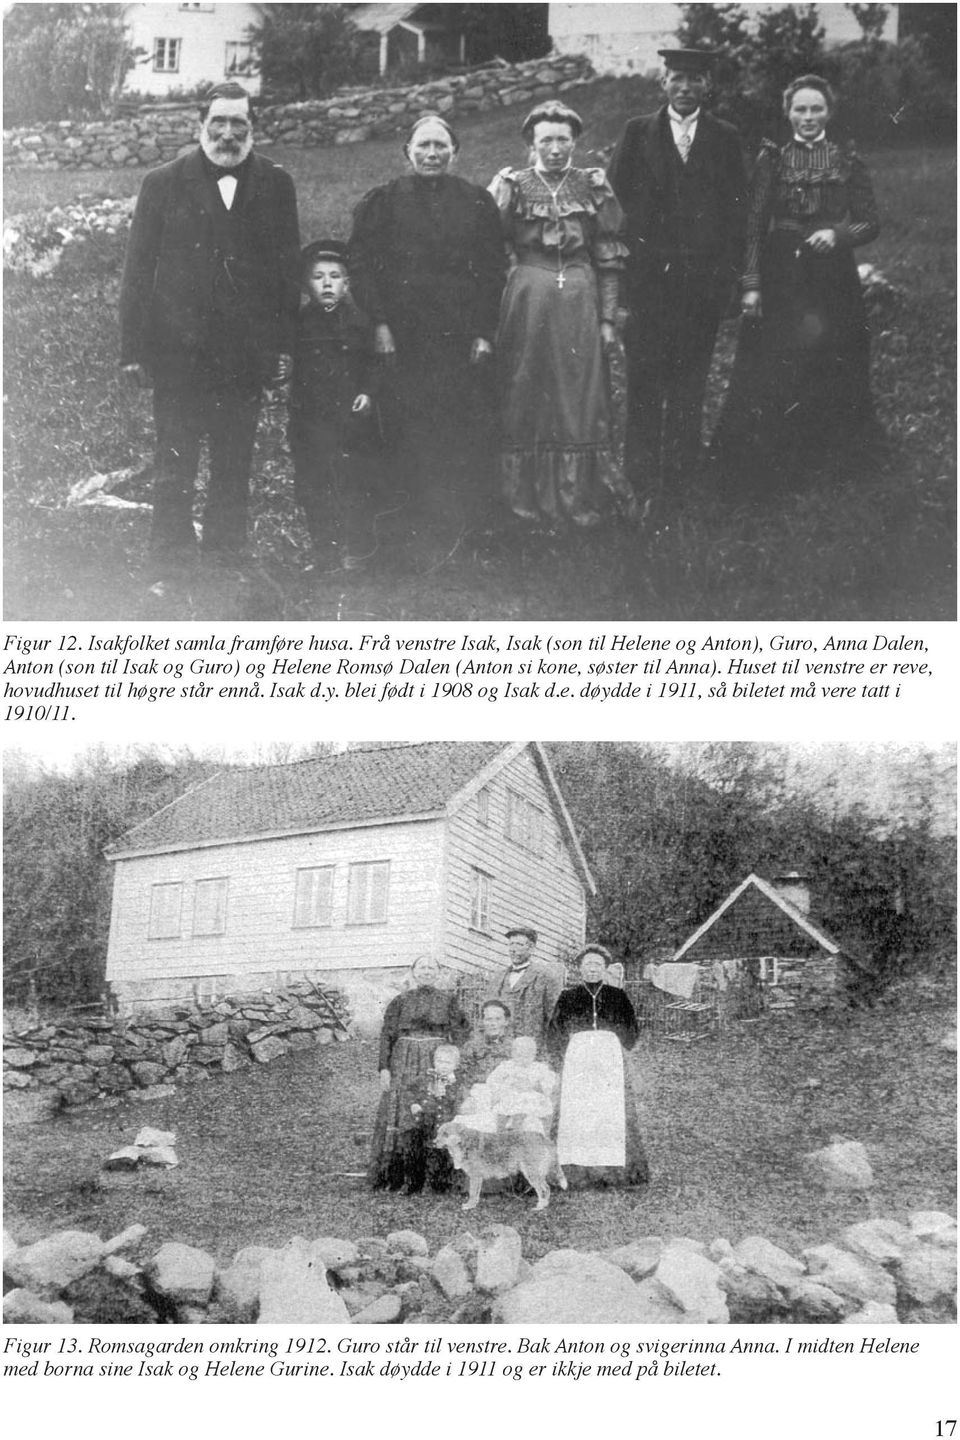 kone, søster til Anna). Huset til venstre er reve, hovudhuset til høgre står ennå. Isak d.y. blei født i 1908 og Isak d.e. døydde i 1911, så biletet må vere tatt i 1910/11.